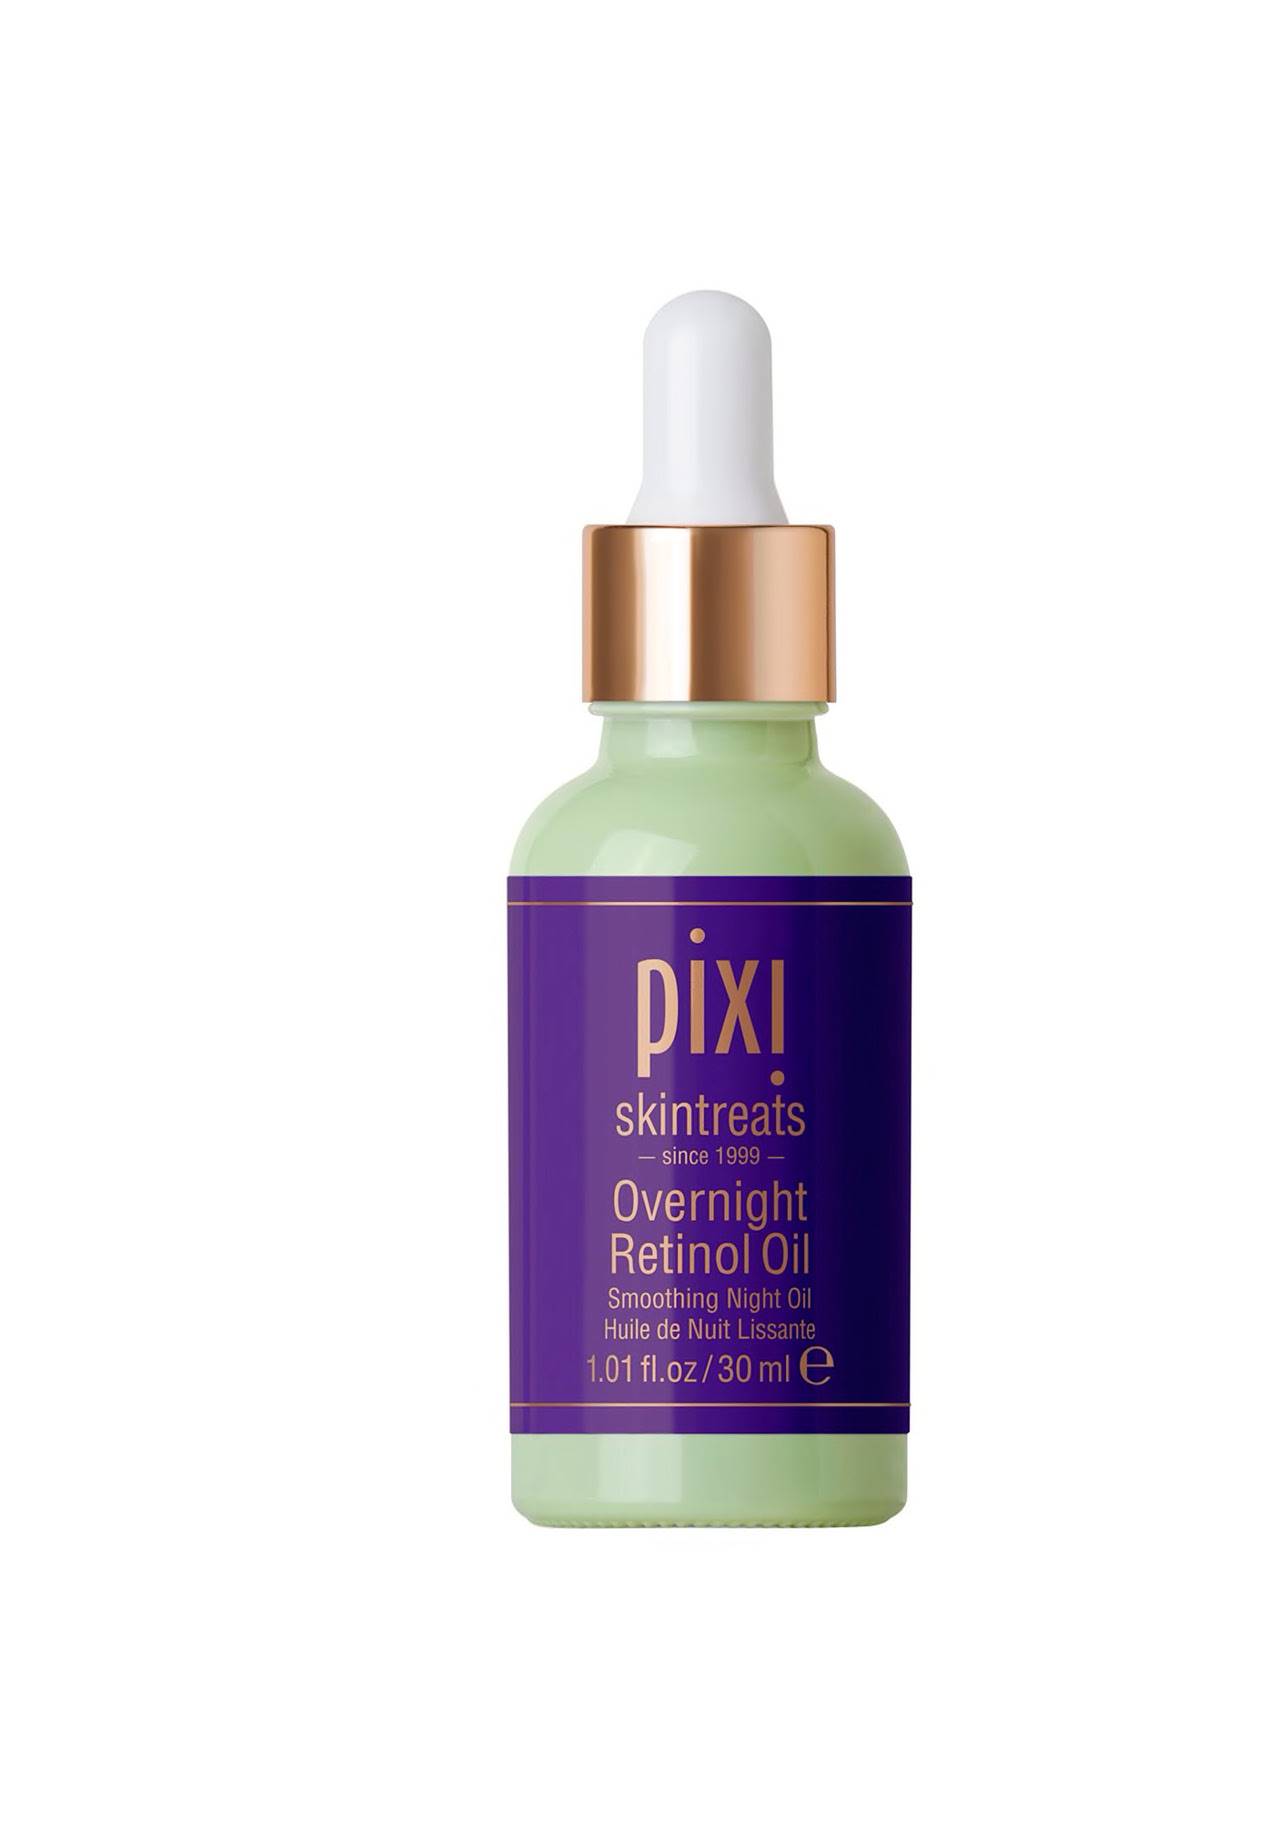 Cremas con retinol: Aceite de Noche Retinol Overnight de Pixi